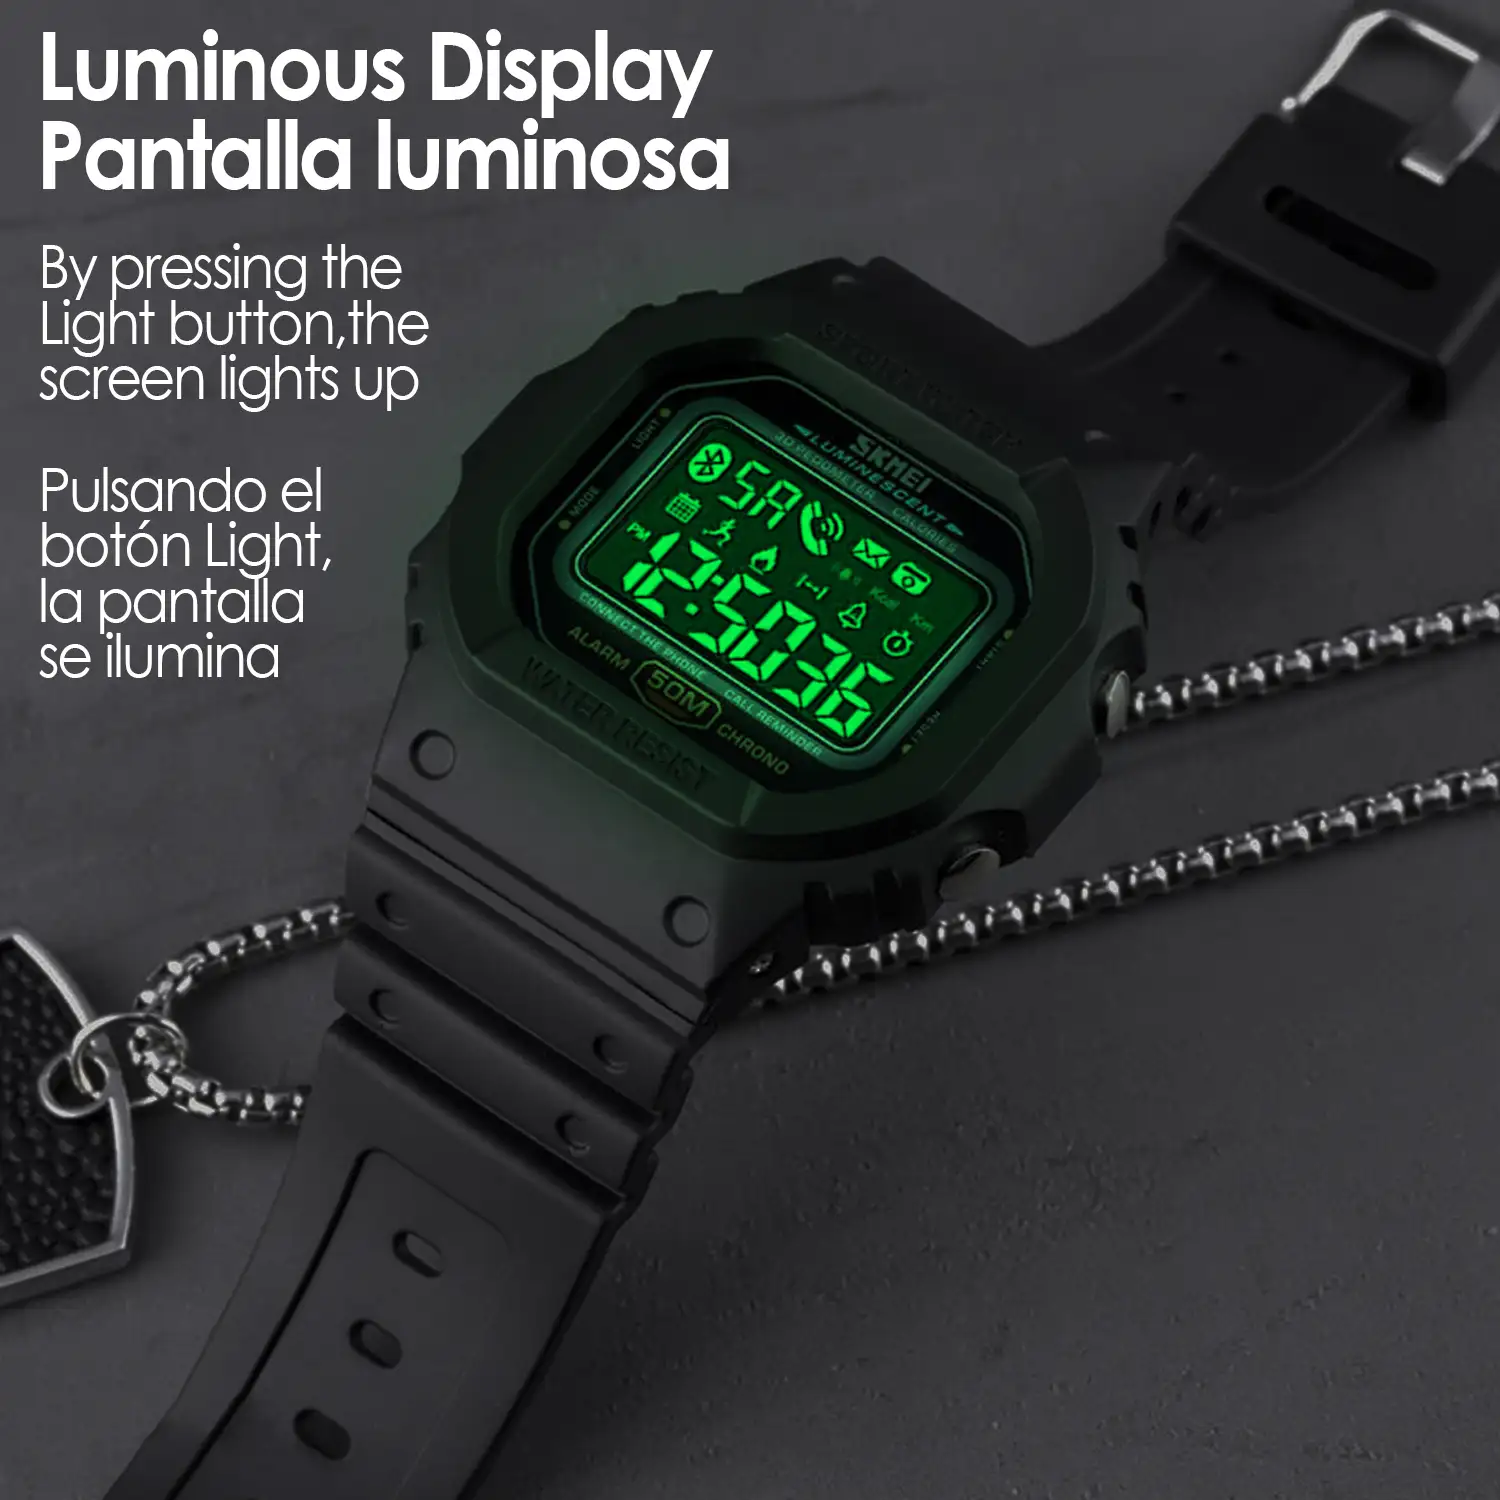 Smartwatch 1629 bluetooth diseño clásico con funciones avanzadas